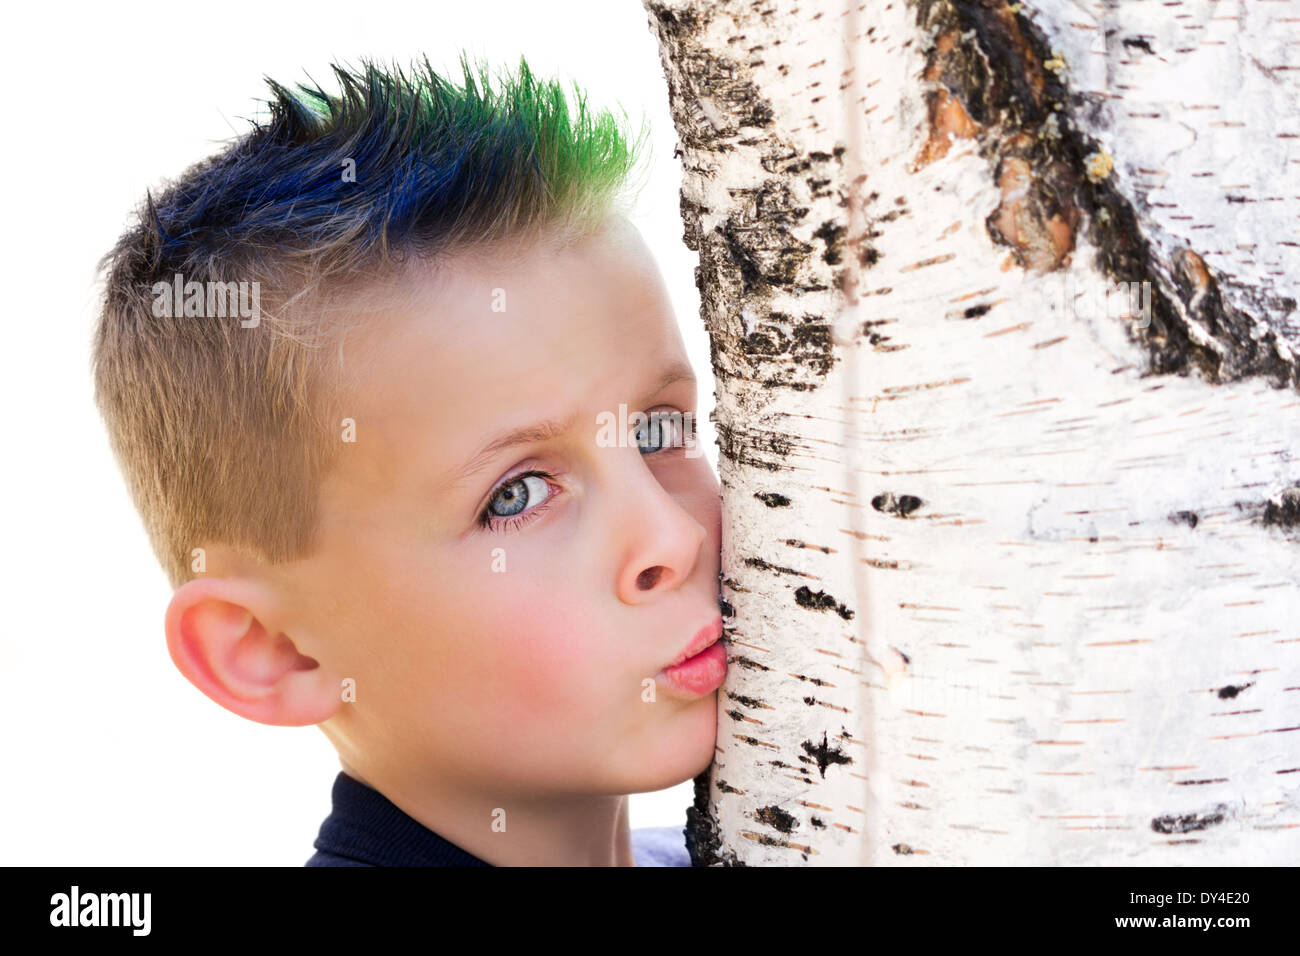 Kleiner Junge mit blauen und grünen spikey Haar küssen einen Birke Baumstamm Stockfoto